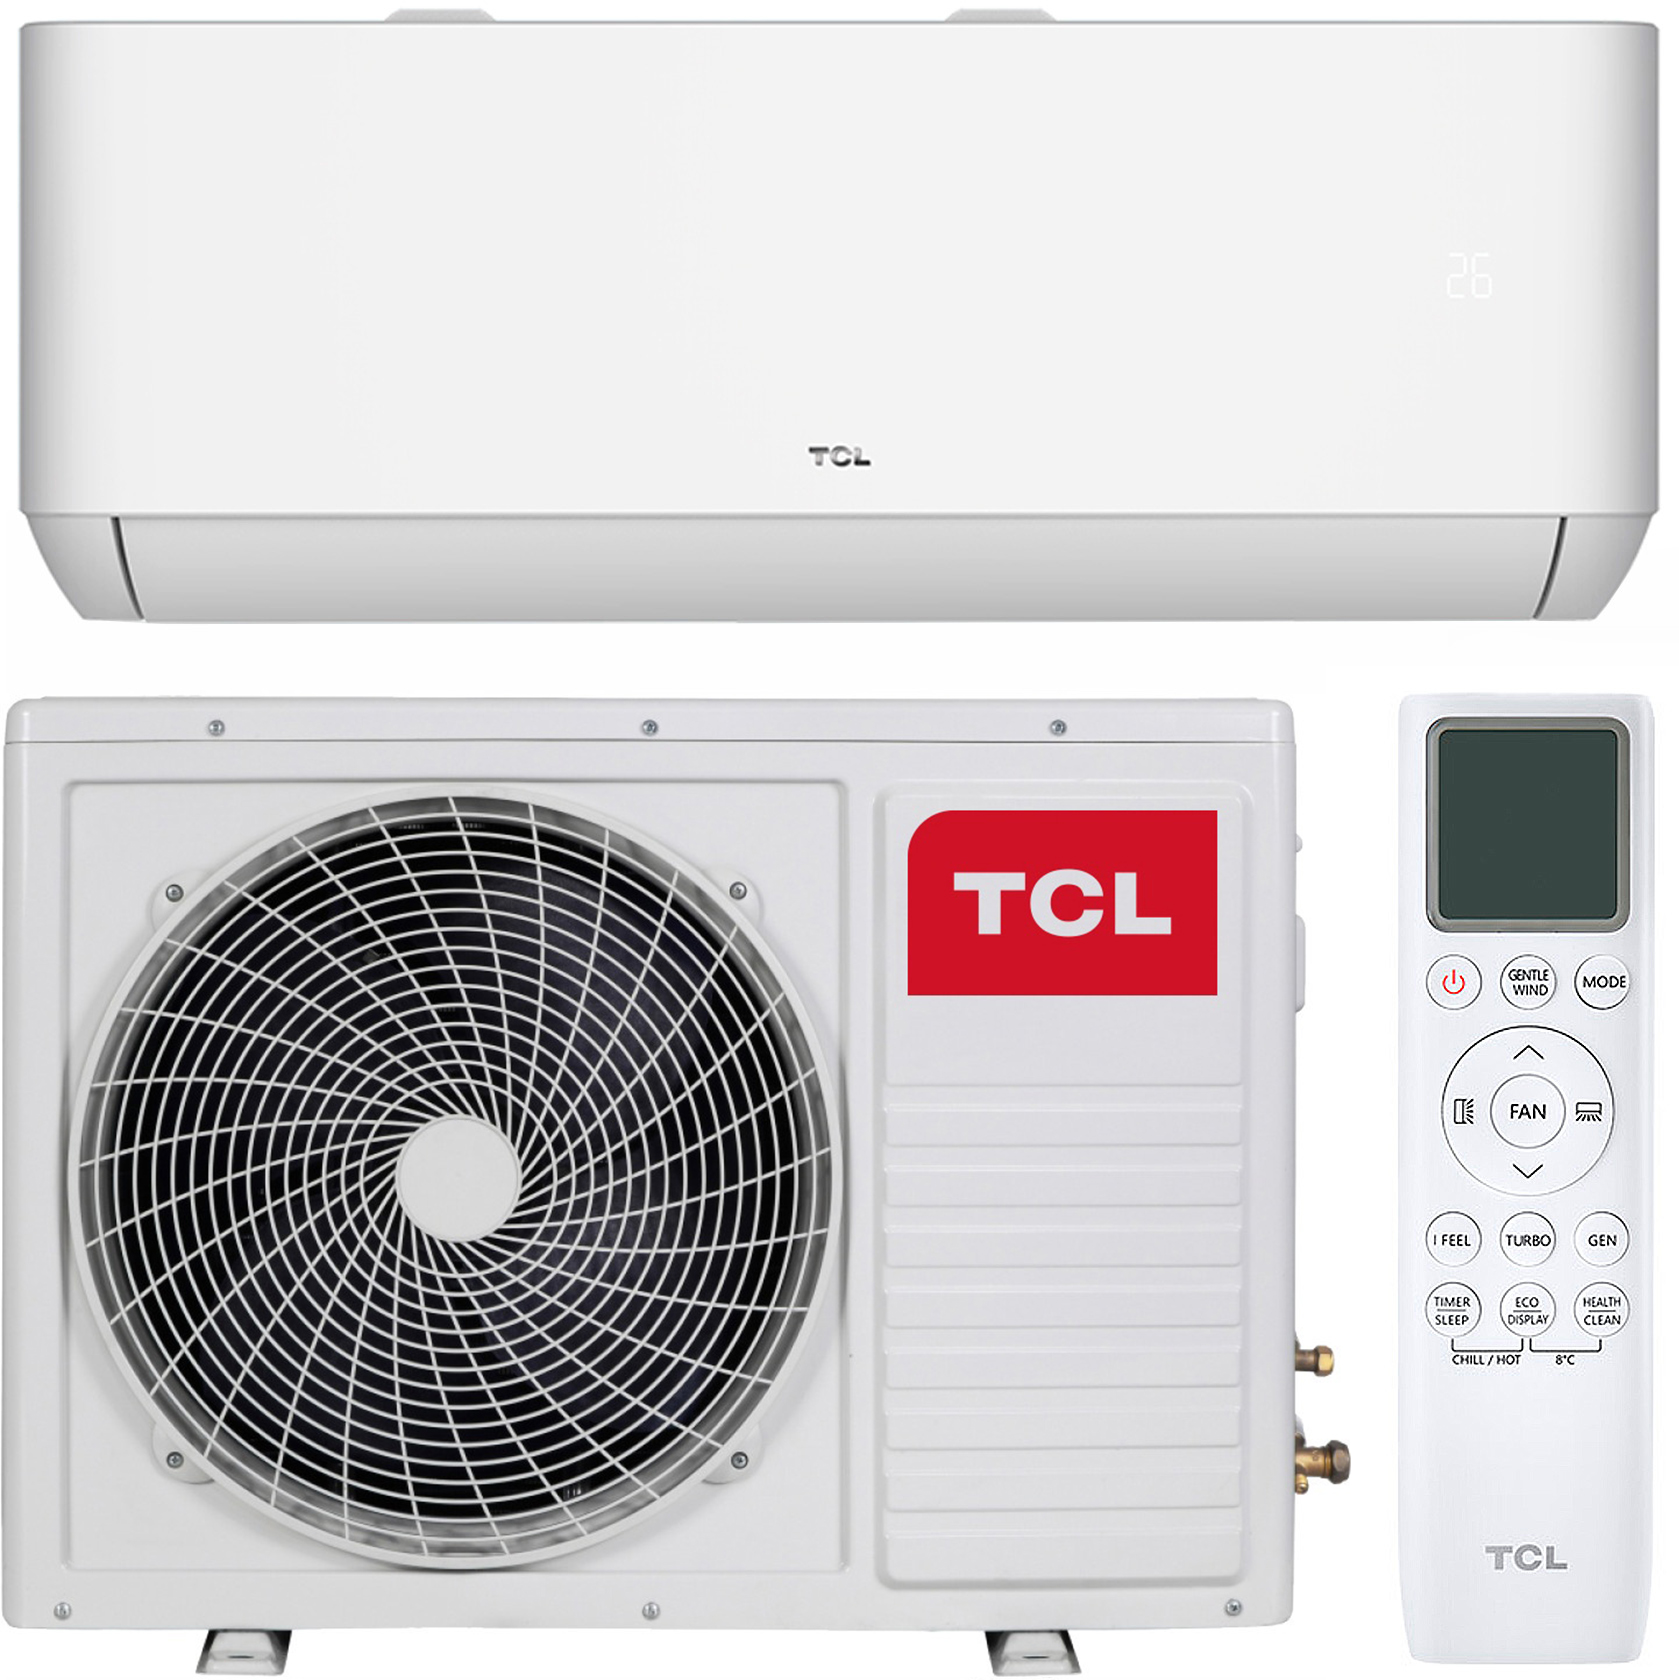 Отзывы кондиционер tcl 12 тыс. btu TCL Ocarina TAC-12CHSD/TPG11I Inverter R32 WI-FI в Украине